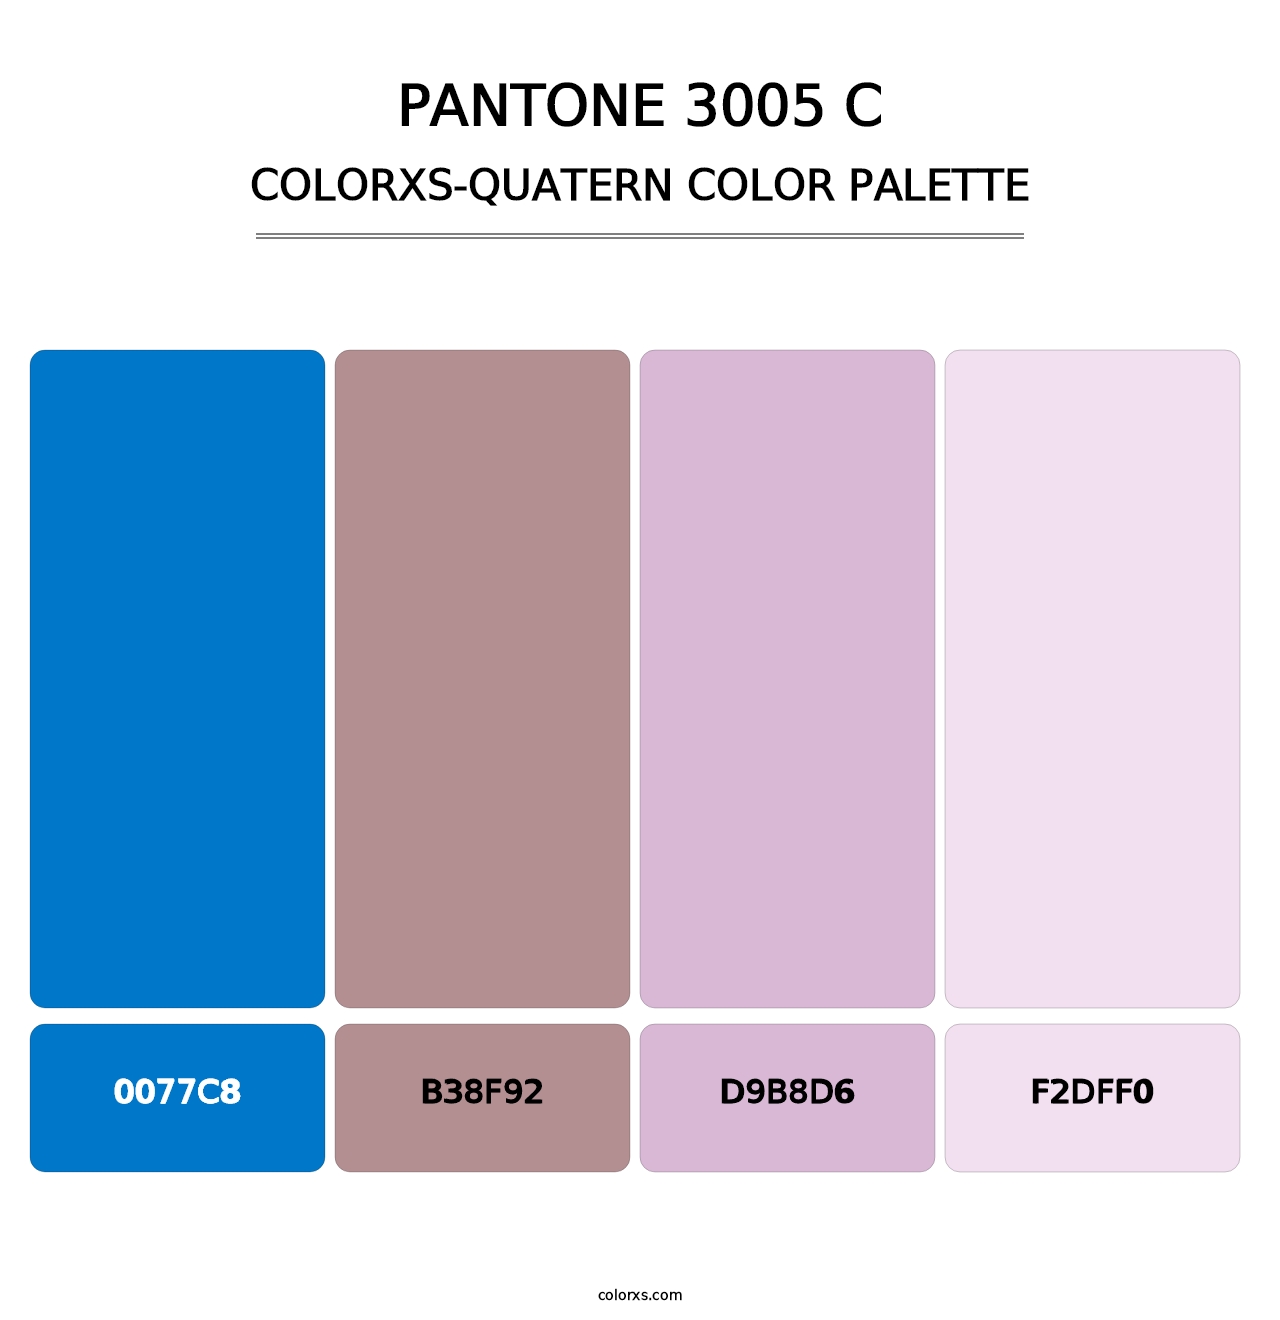 PANTONE 3005 C - Colorxs Quatern Palette